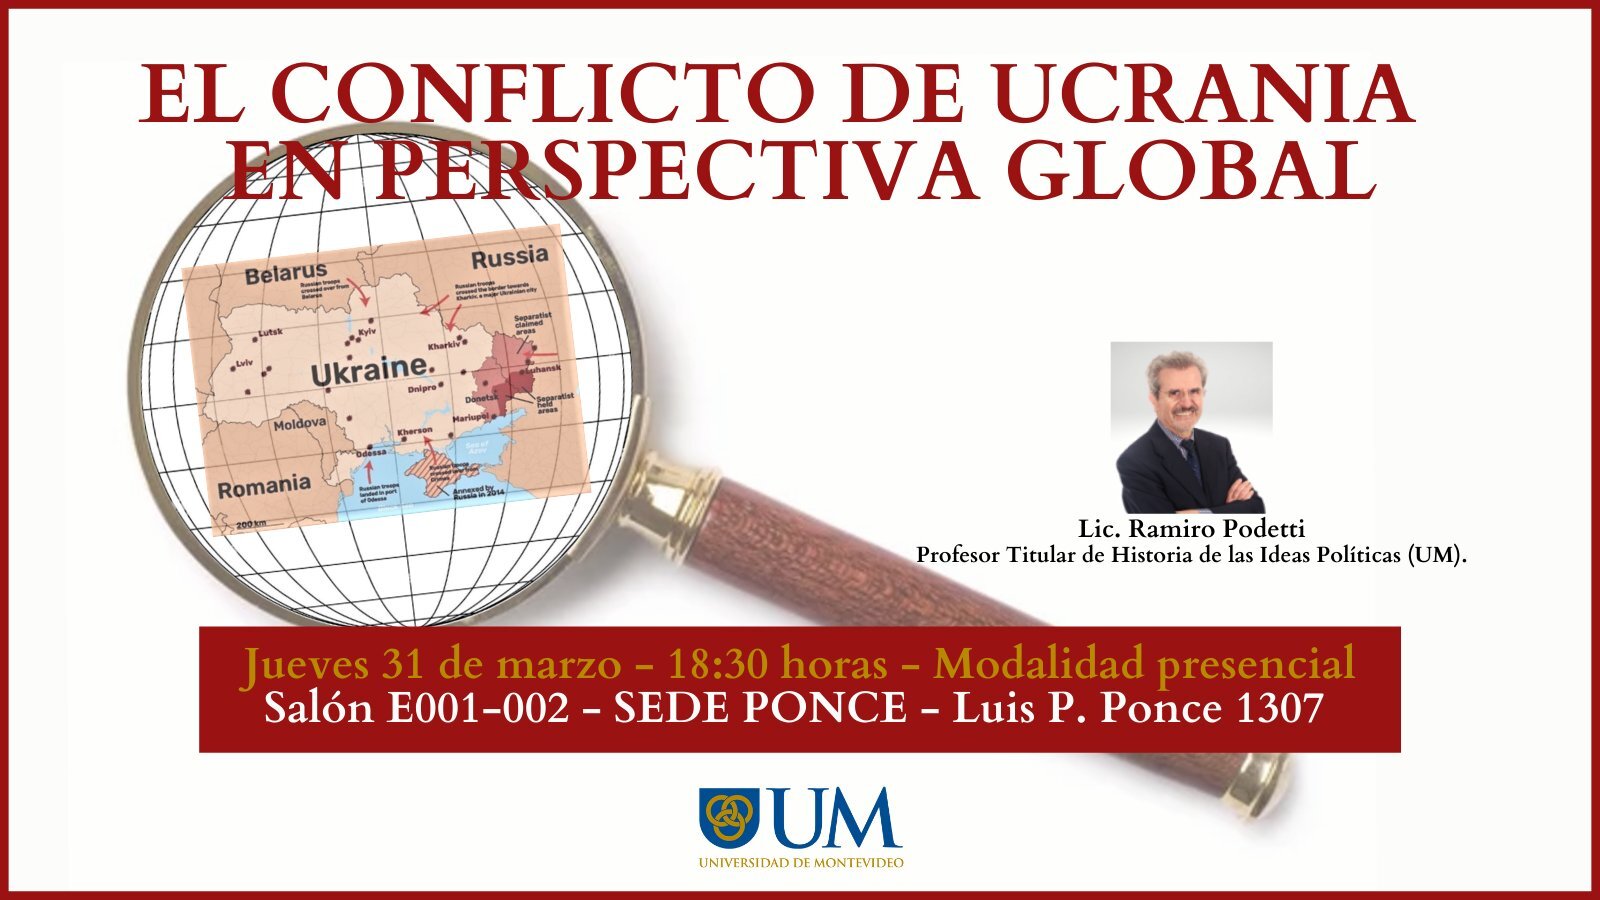 El conflicto de Ucrania en perspectiva Global, con Lic. Ramiro Podetti, Universidad de Montevideo